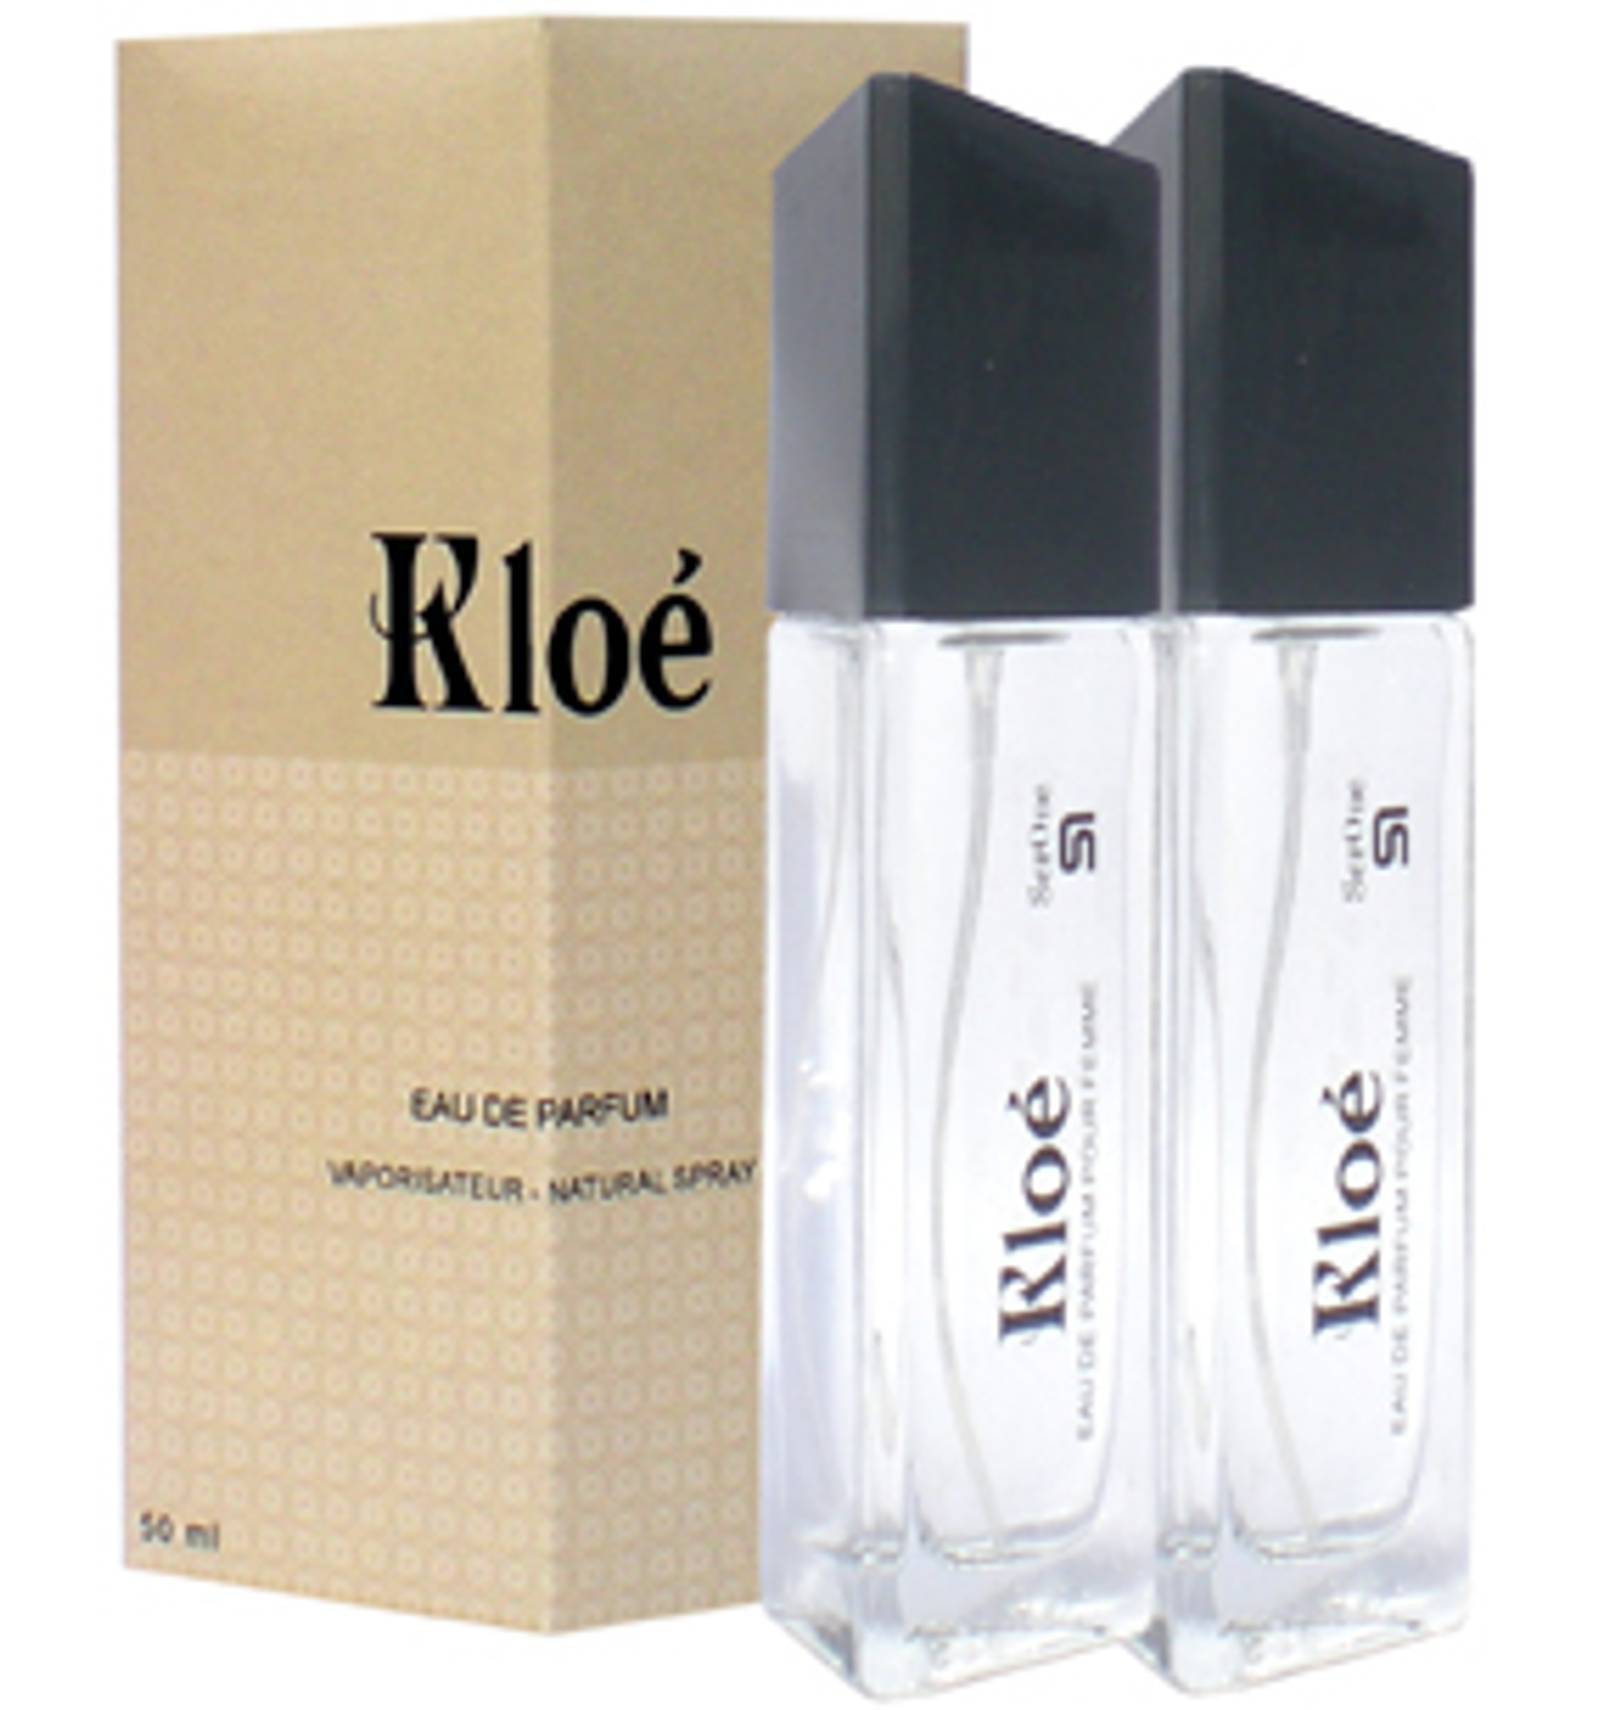 Perfume Kloé